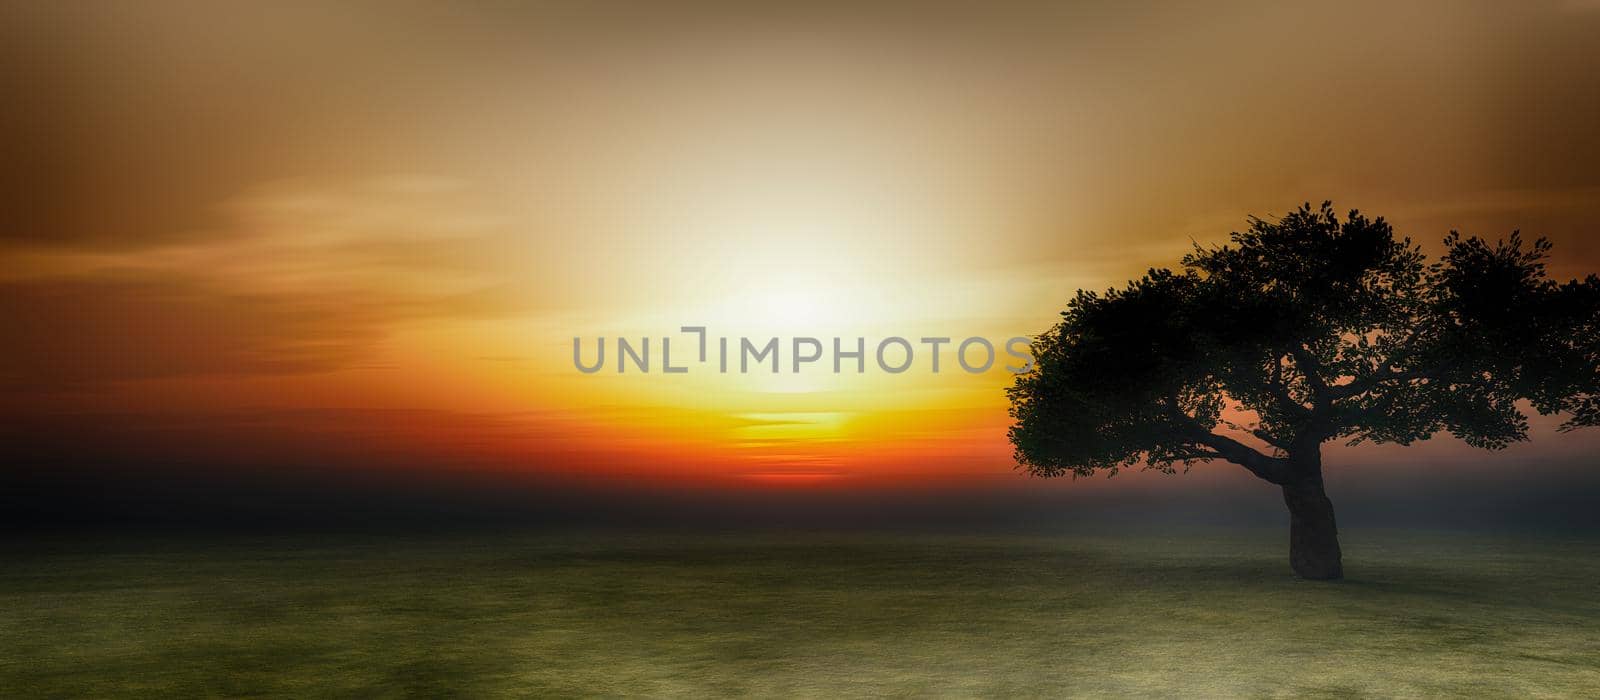 tree on field sunrise, 3d render illustration